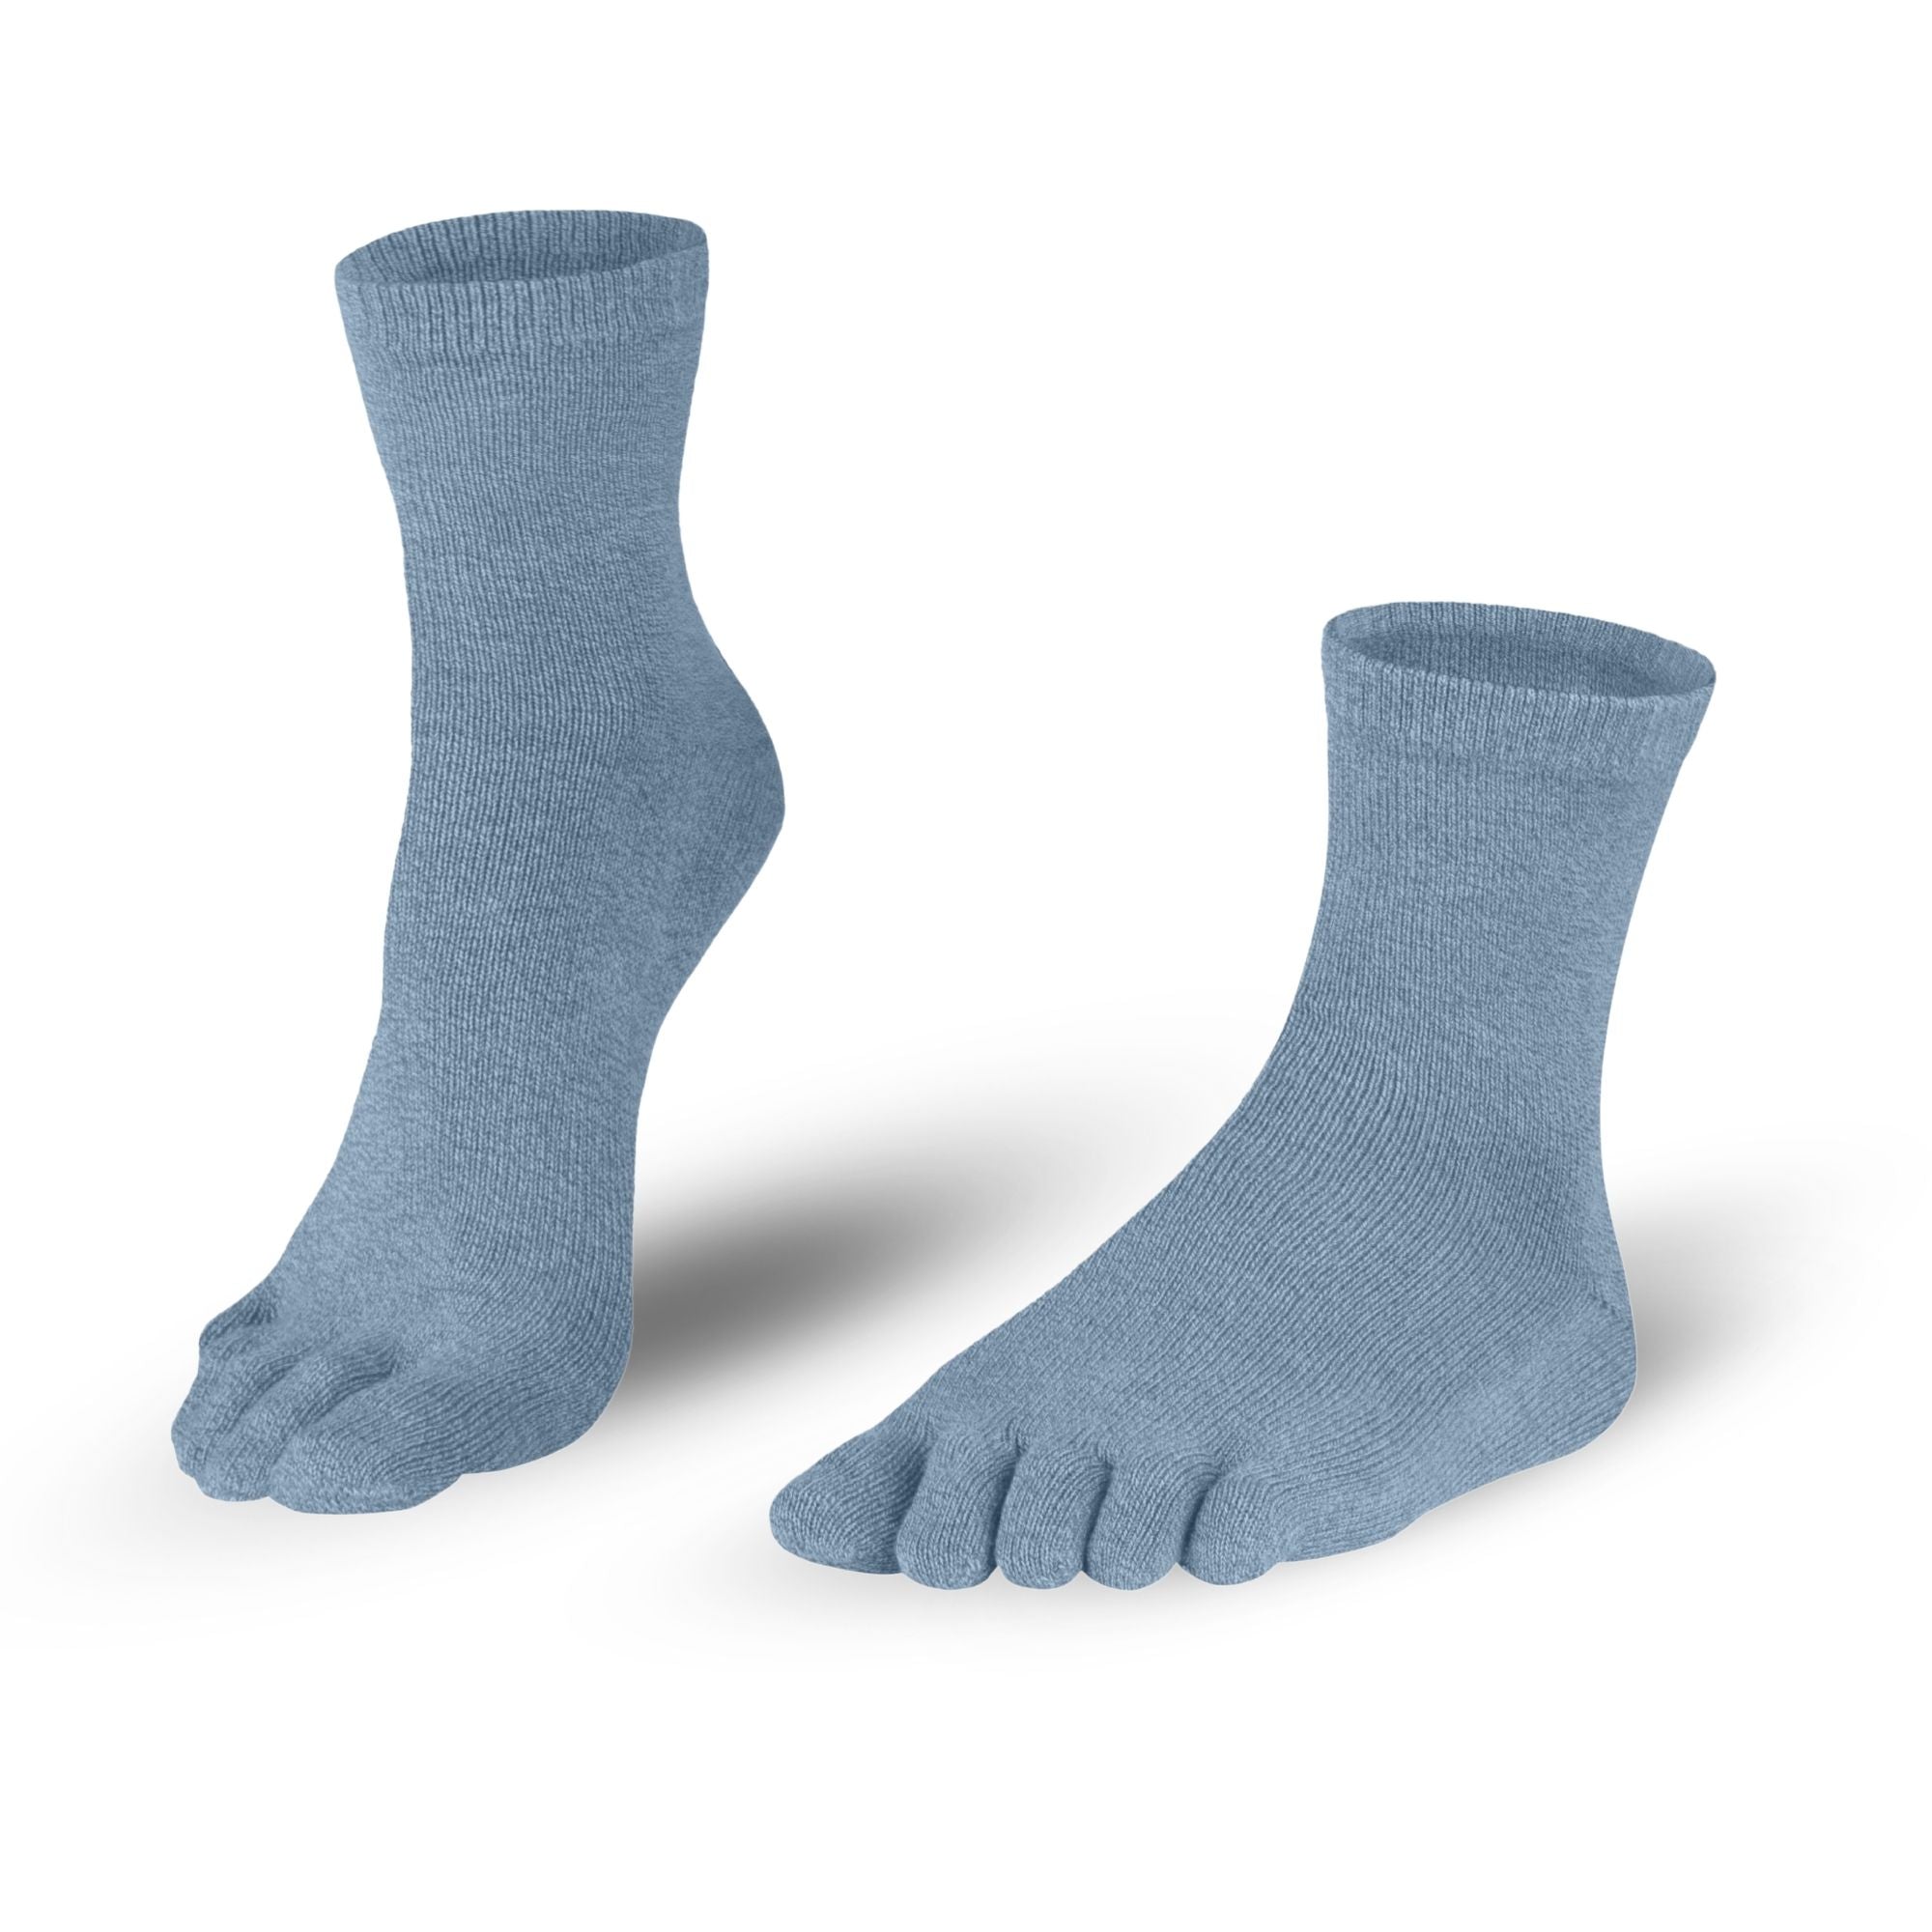 Bombažne nogavice za prste nogavic v modro-sivi barvi za dame in gospode